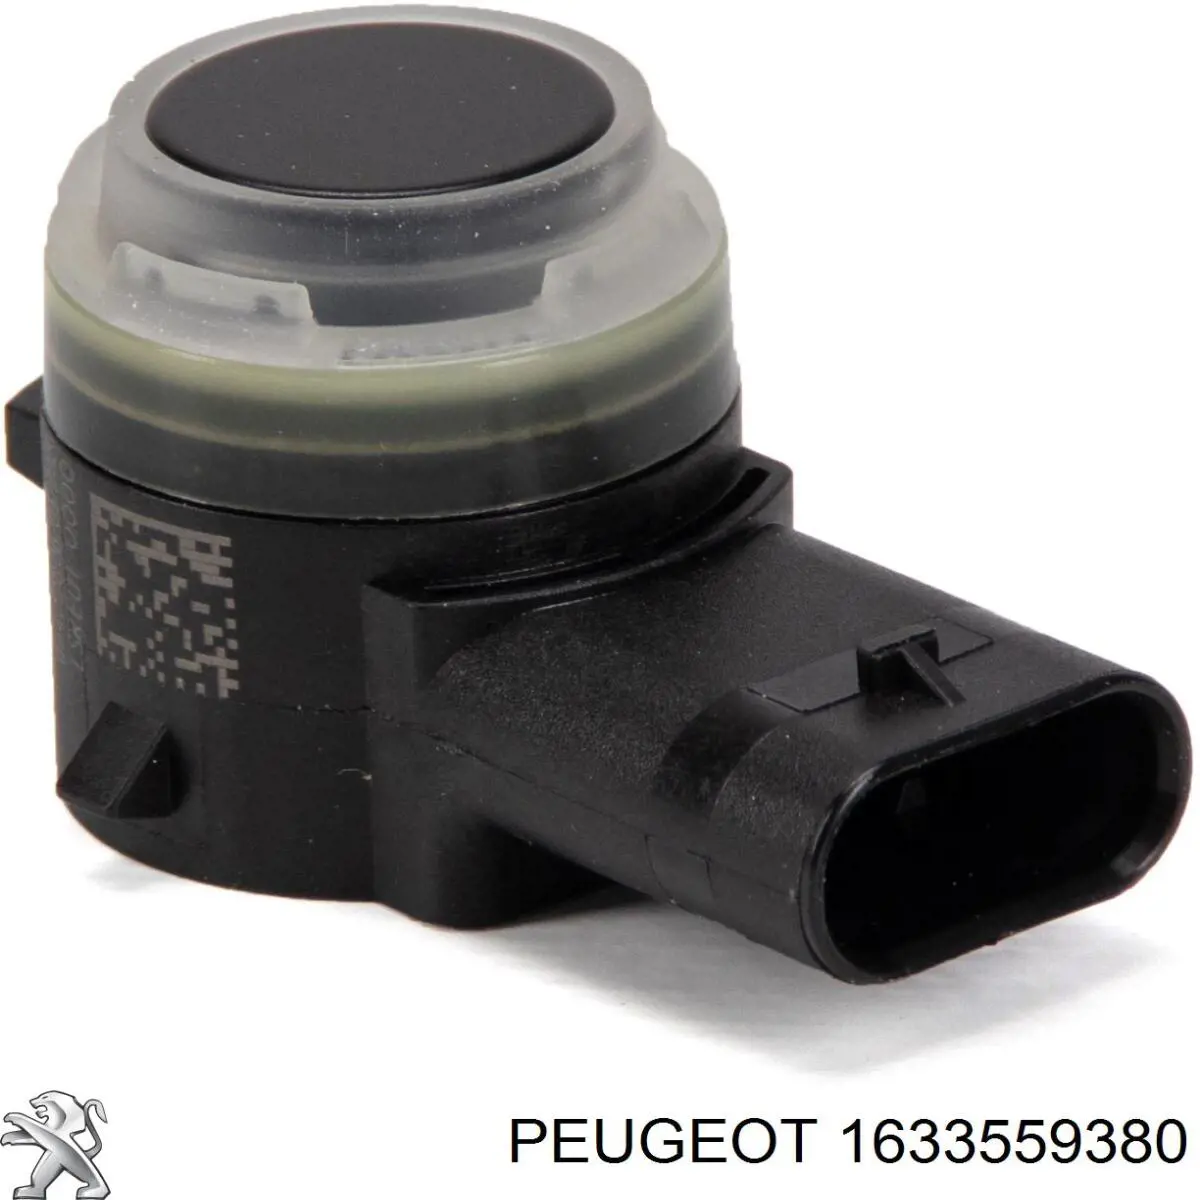 1633559380 Peugeot/Citroen sensor de alarma de estacionamiento(packtronic Delantero/Trasero Central)